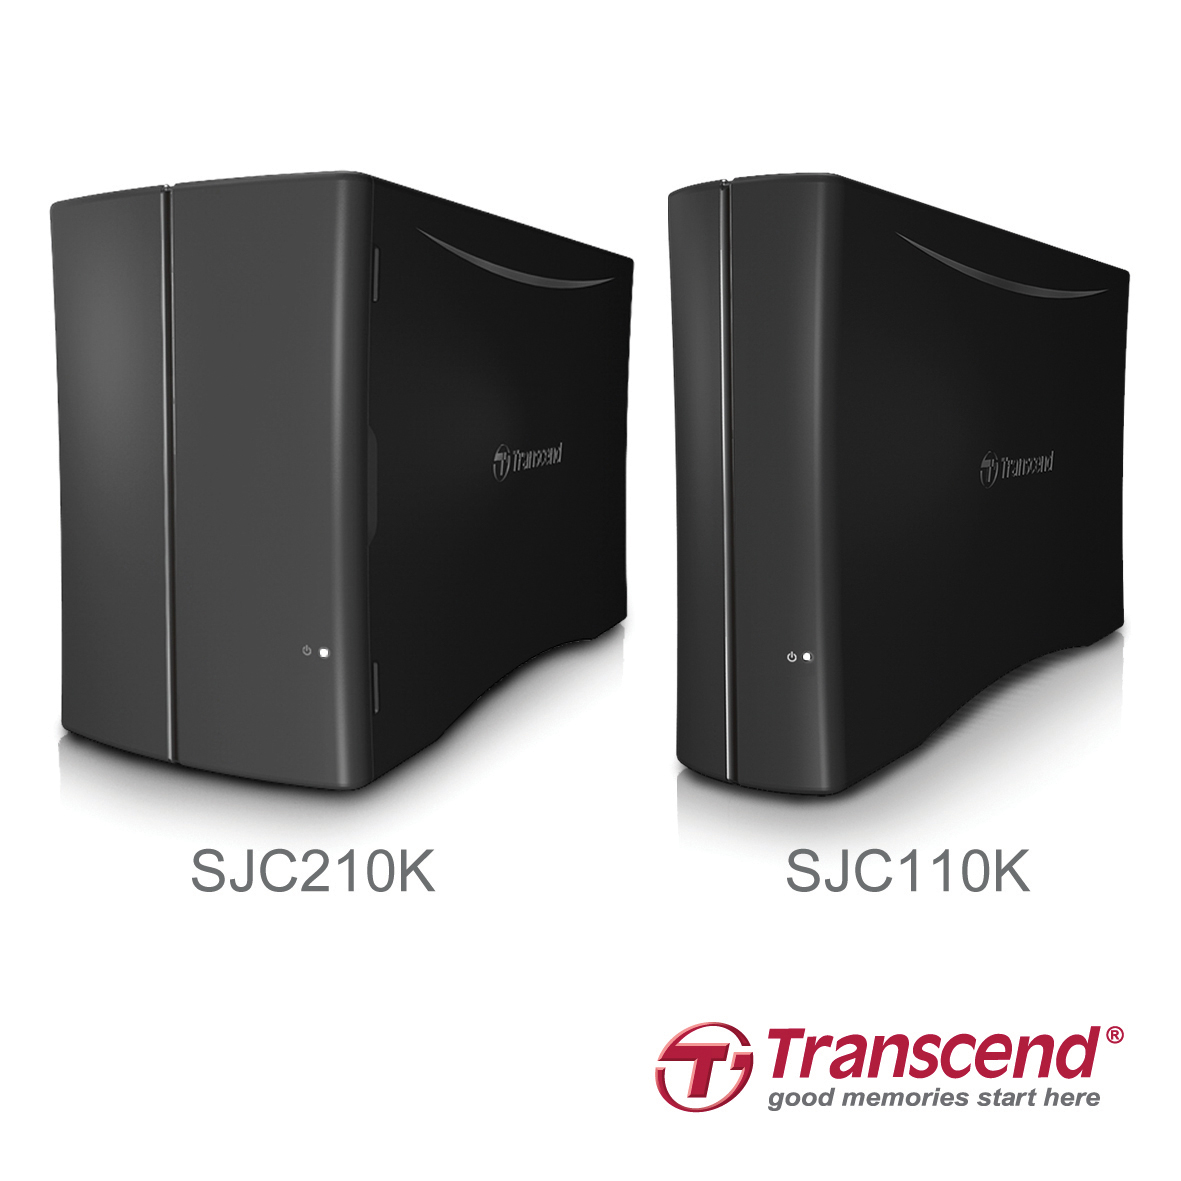 Transcend StoreJet Cloud 110 and StoreJet Cloud 210 Personal Cloud Storage